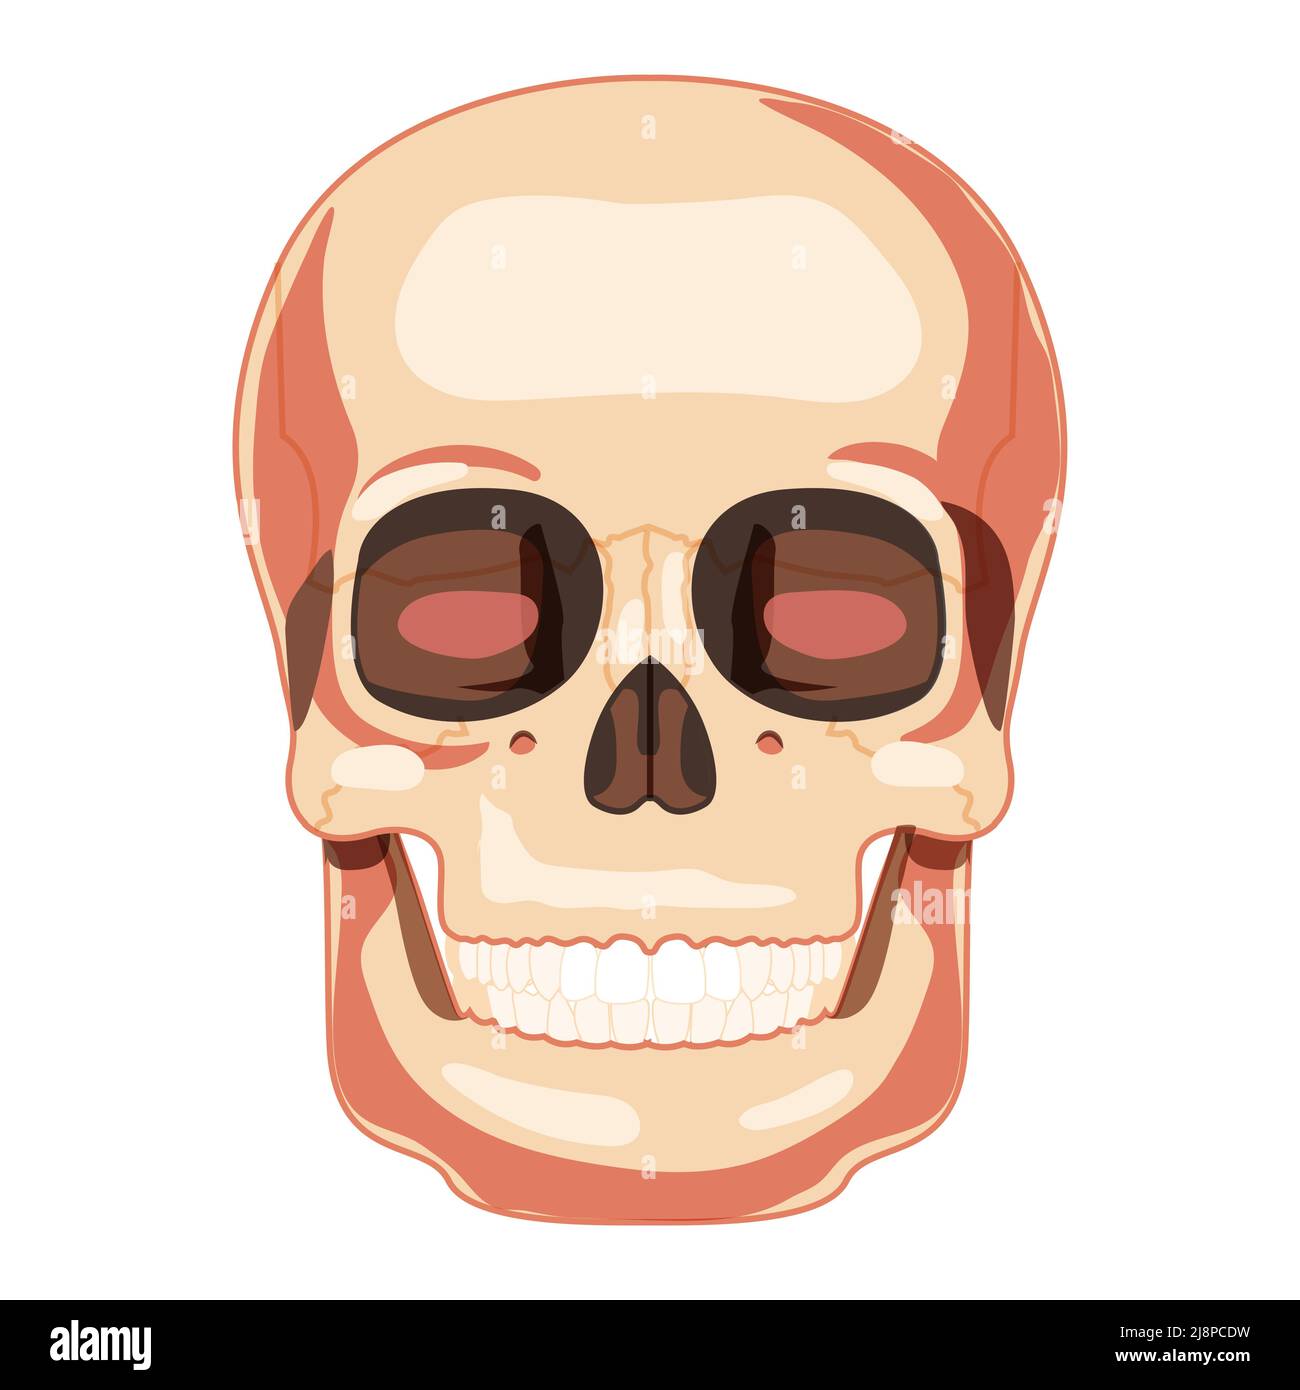 Menschlicher Schädel Skelettkopf anatomisch korrekte Vorderansicht. Modell der menschlichen Kiefer mit Zahnreihe. Chump realistische flache natürliche Farbkonzept. Vektordarstellung der Anatomie auf weißem Hintergrund isoliert Stock Vektor